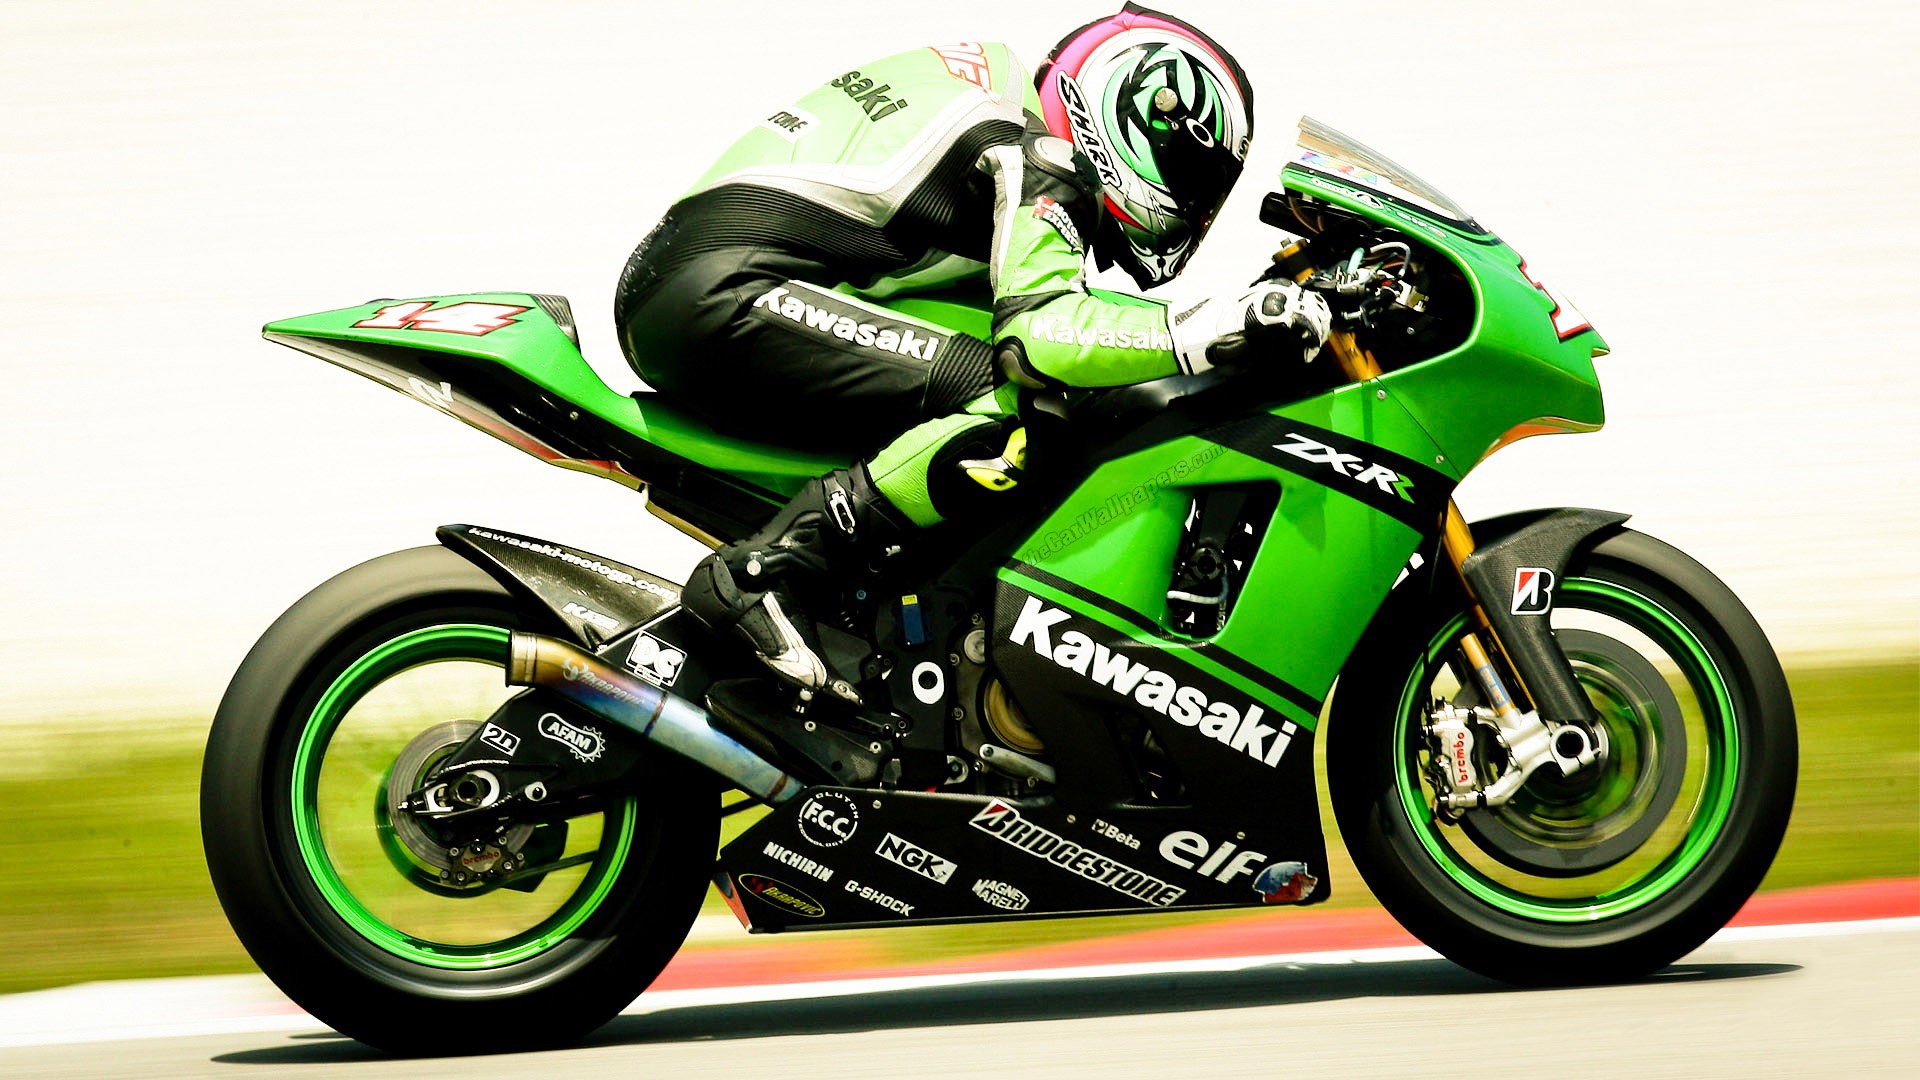 kawasaki wallpaper hd,land vehicle,motorcycle,vehicle,superbike racing,motorcycle racer